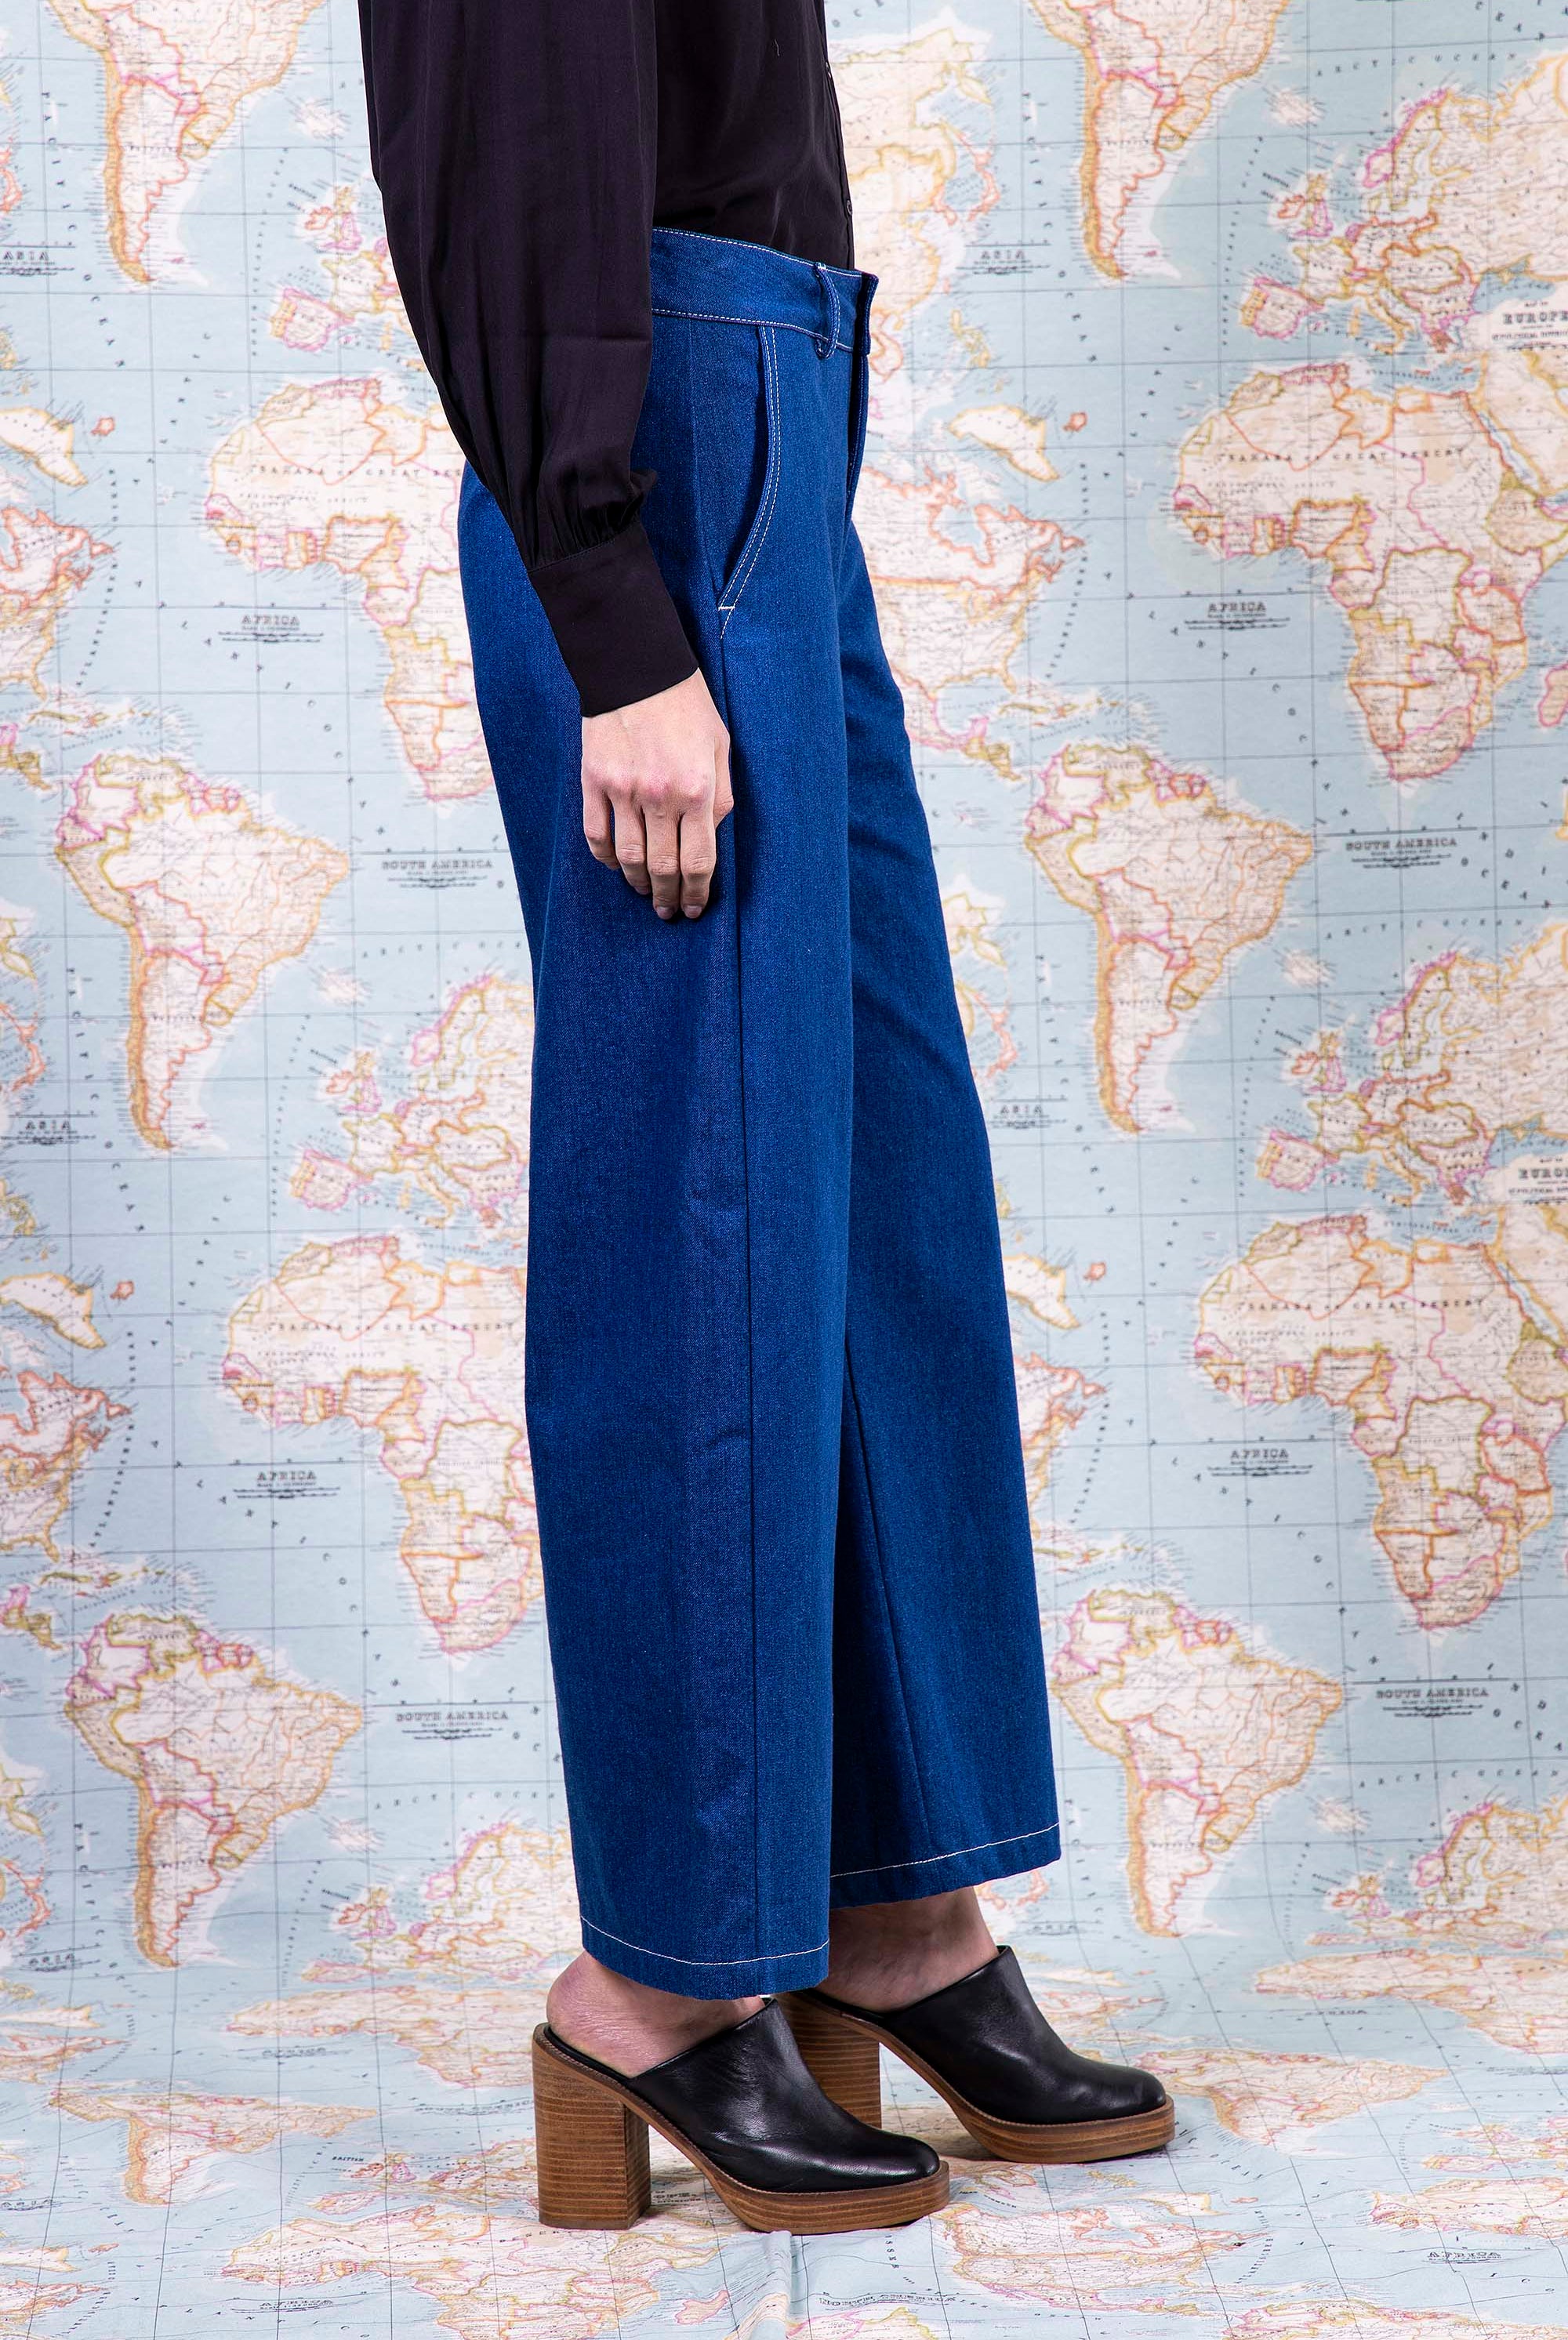 Pantalon Tea Bleu Denim minimalisme et détails tendance, coupes classiques et une palette de couleurs neutres